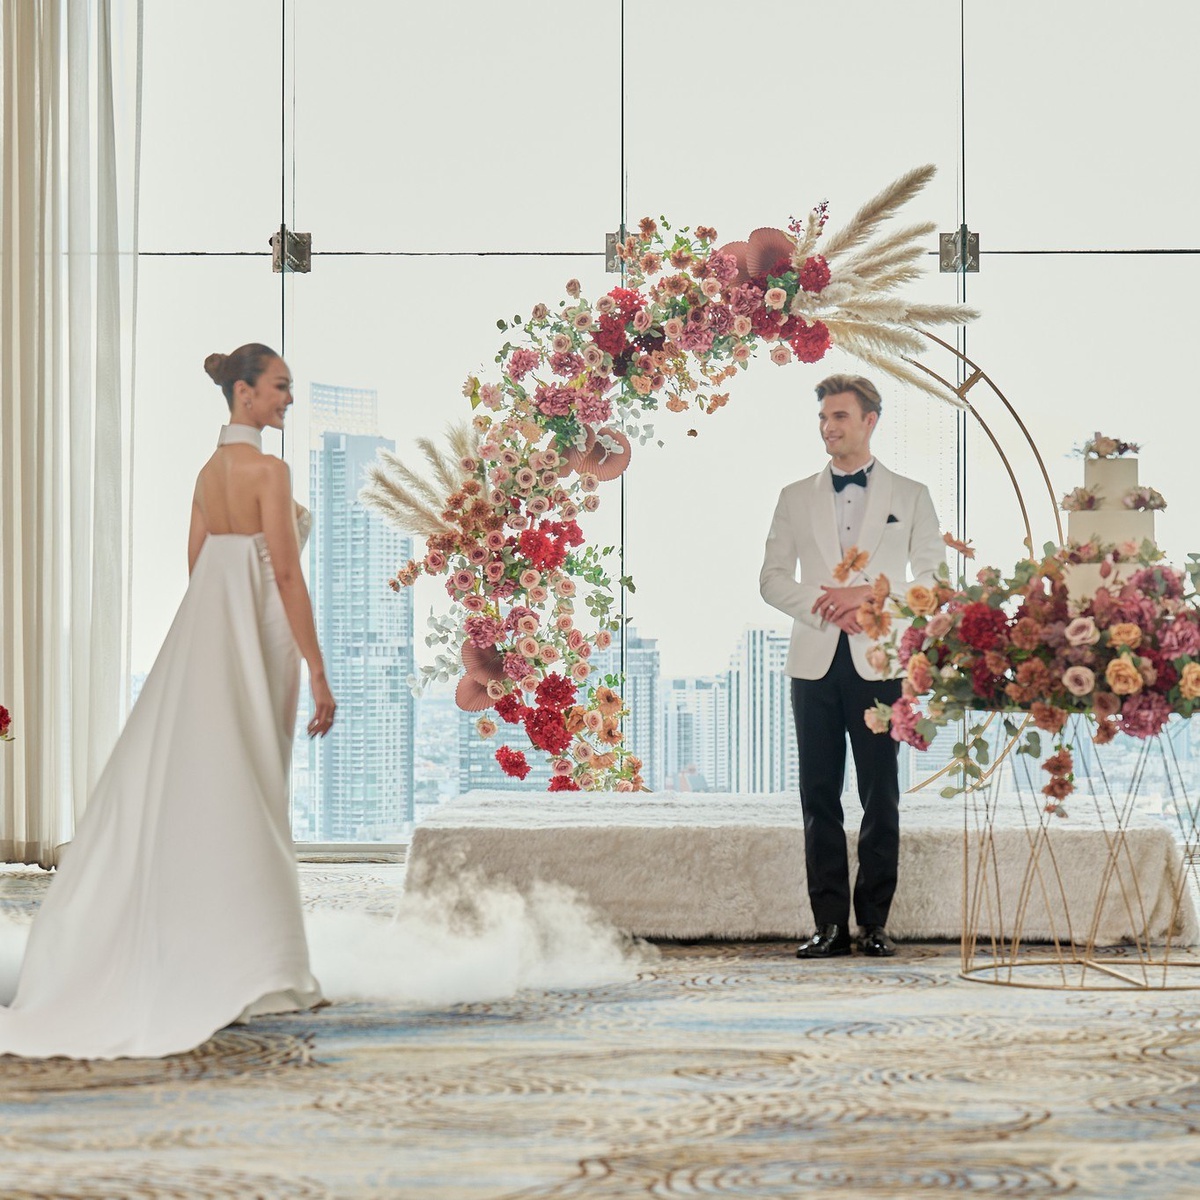 พบกับดีลงานแต่งงานสุดพิเศษจากโรงแรมพูลแมน กรุงเทพฯ จี ที่งาน SABUY WEDDING FESTIVAL ในวันที่ 18 - 19 กุมภาพันธ์ 2566 นี้ ที่ ROYAL PARAGON HALL บูธหมายเลข 103!